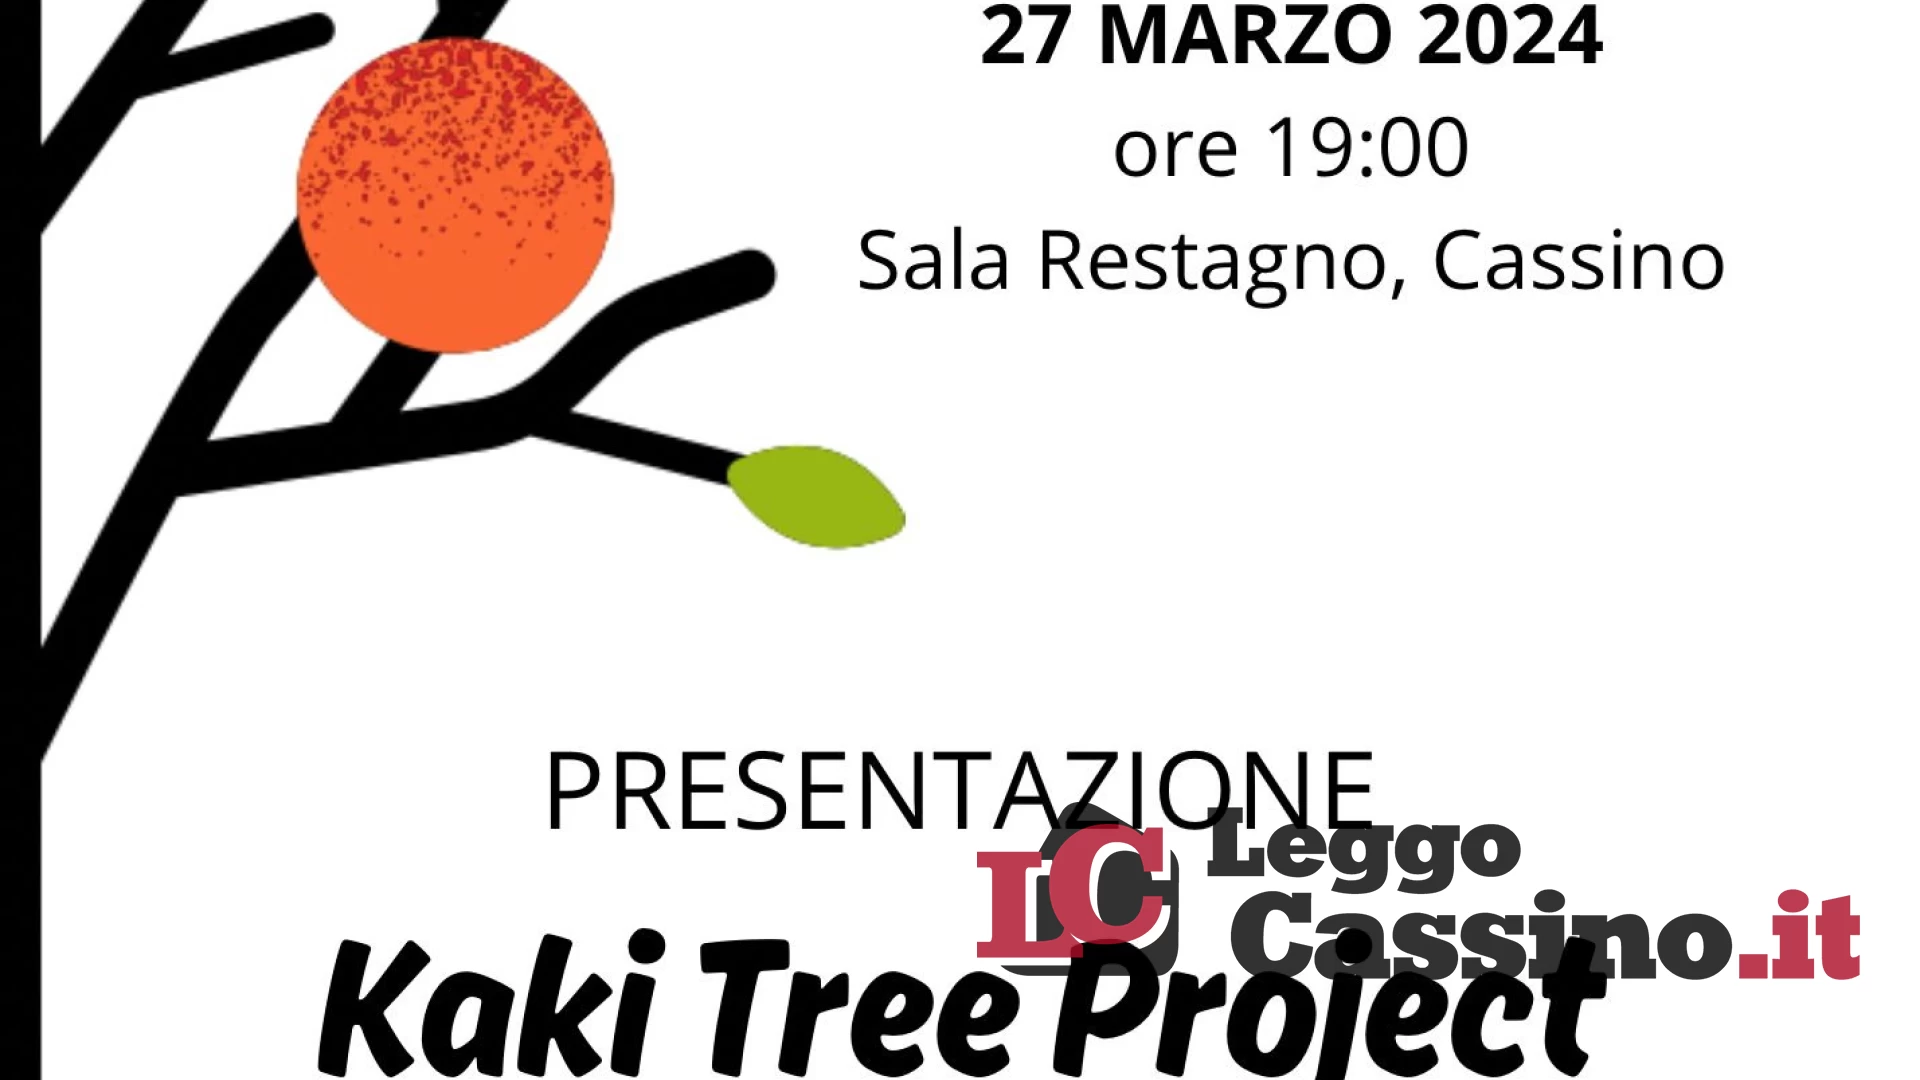 Cassino, l'associazione Eqo presenta oggi il Kaki Tree Project